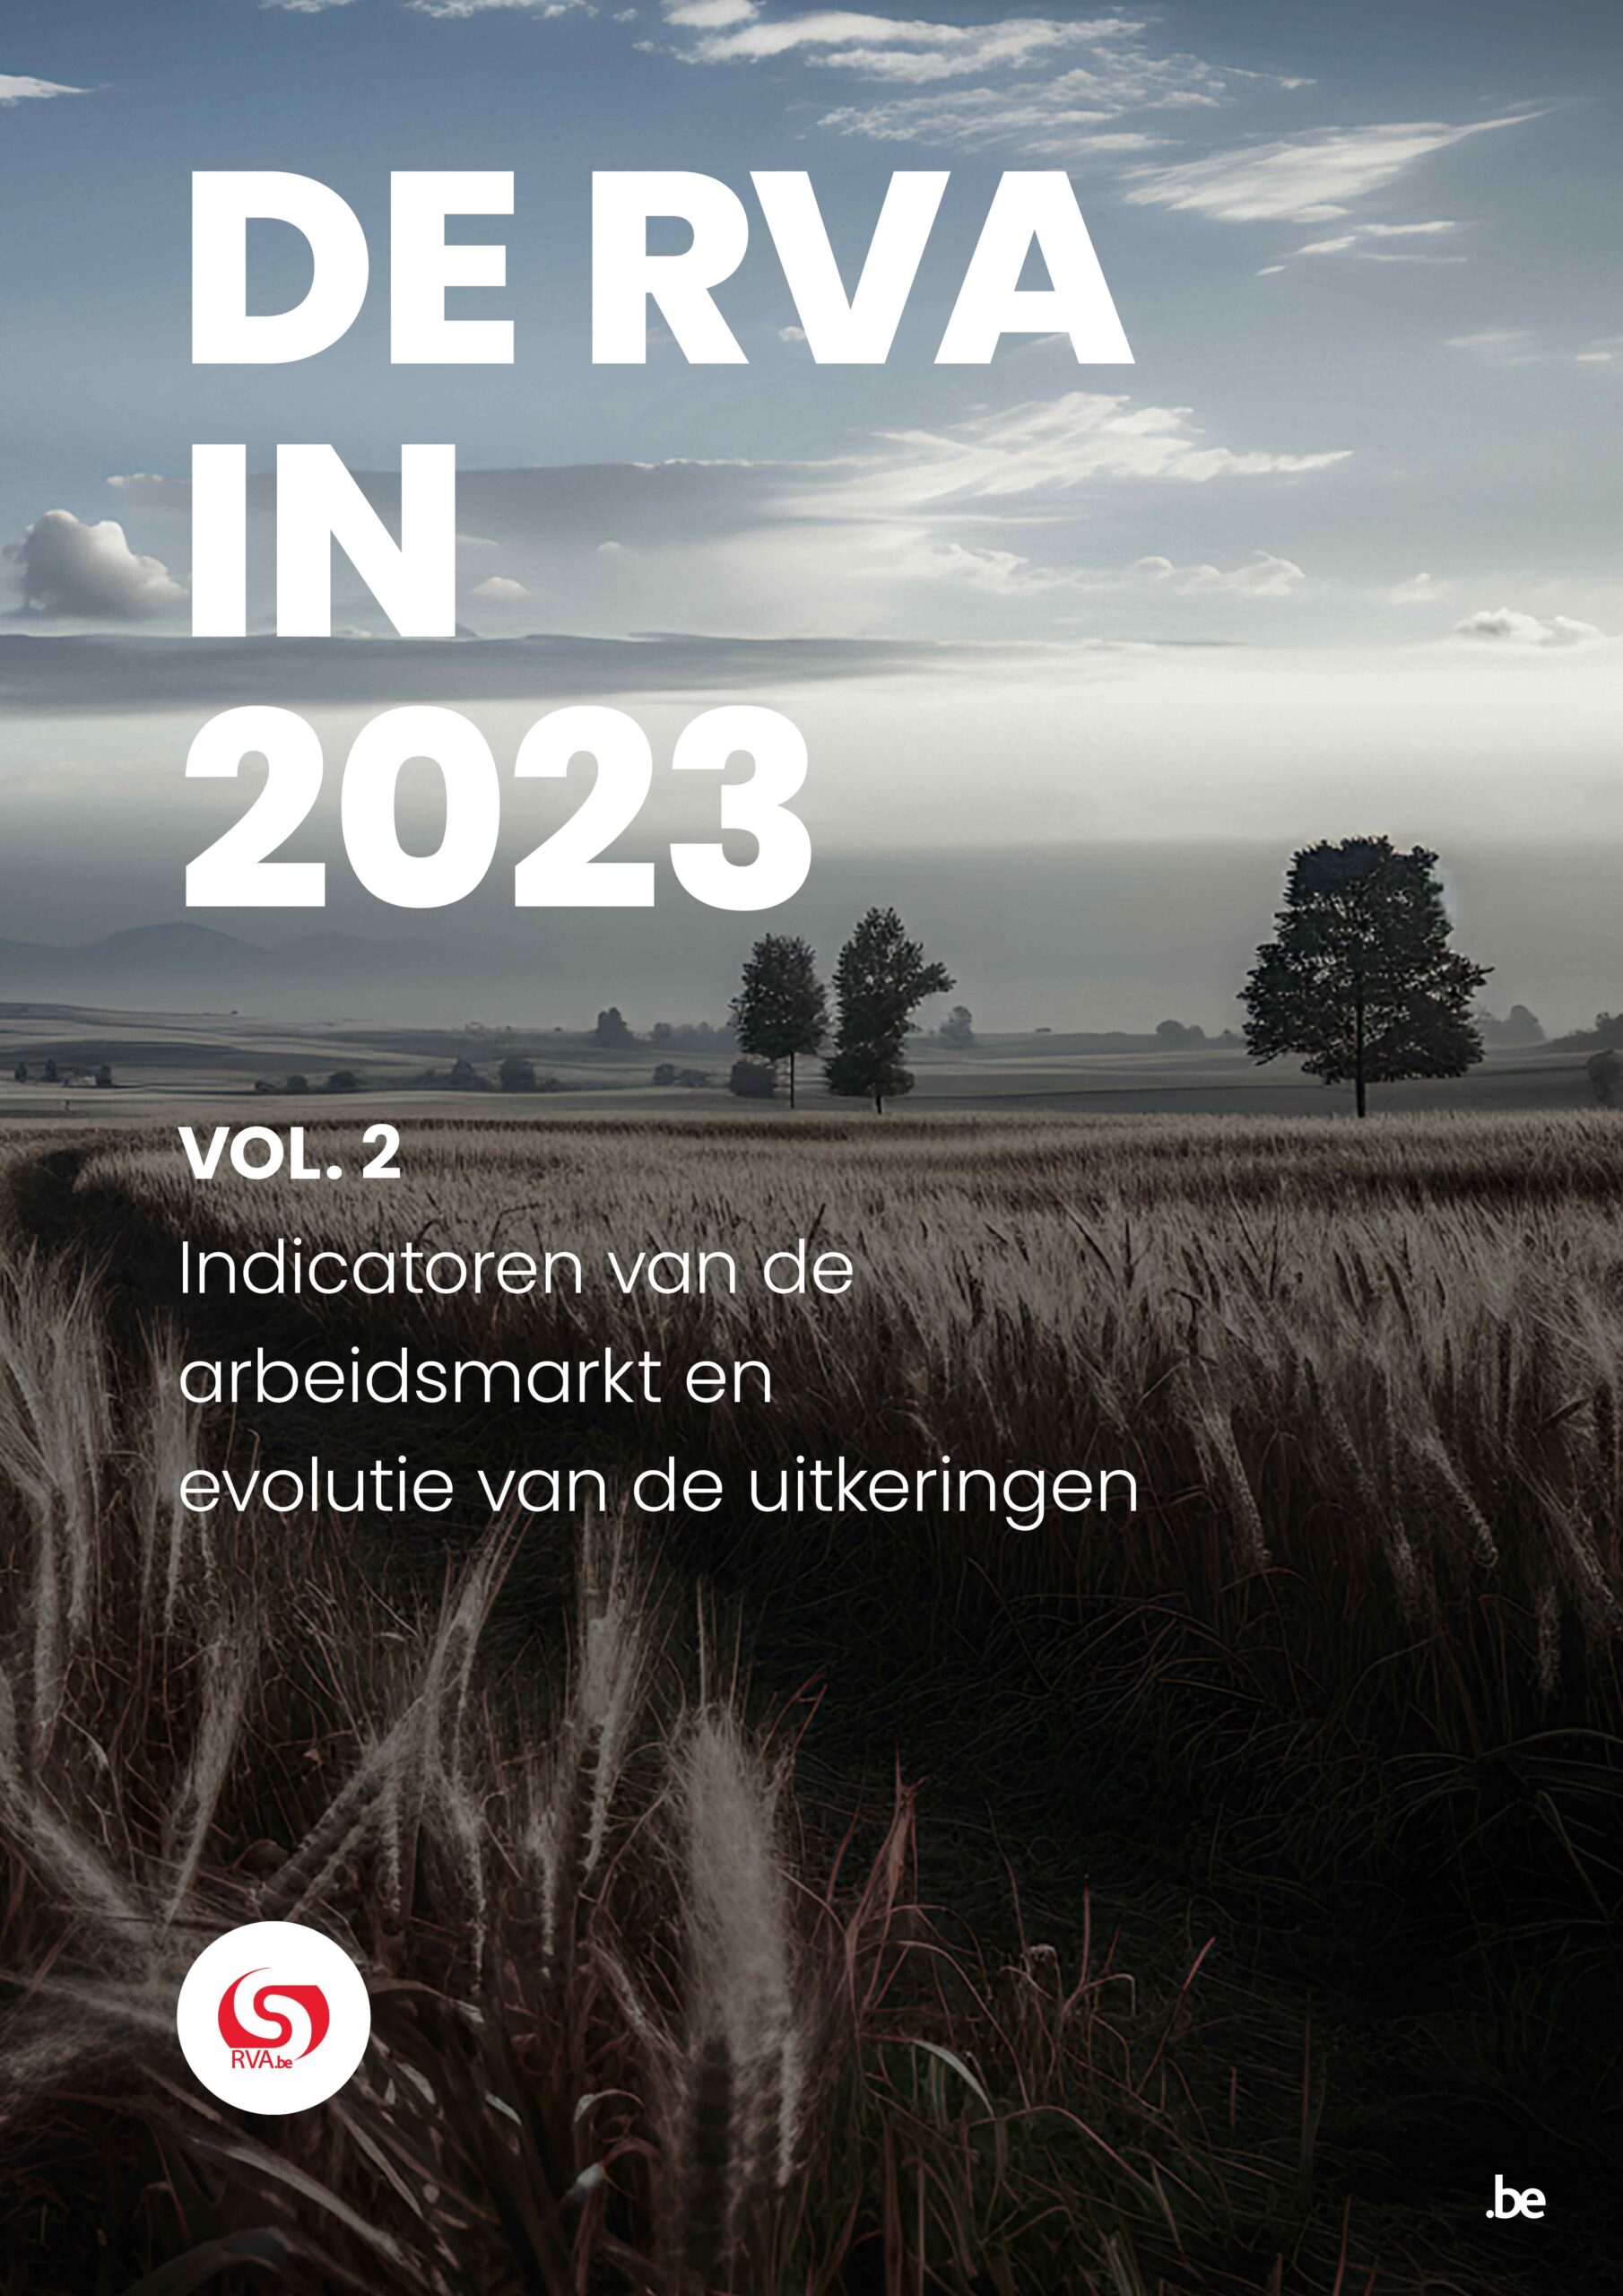 DE RVA IN 2023 - Vol 2